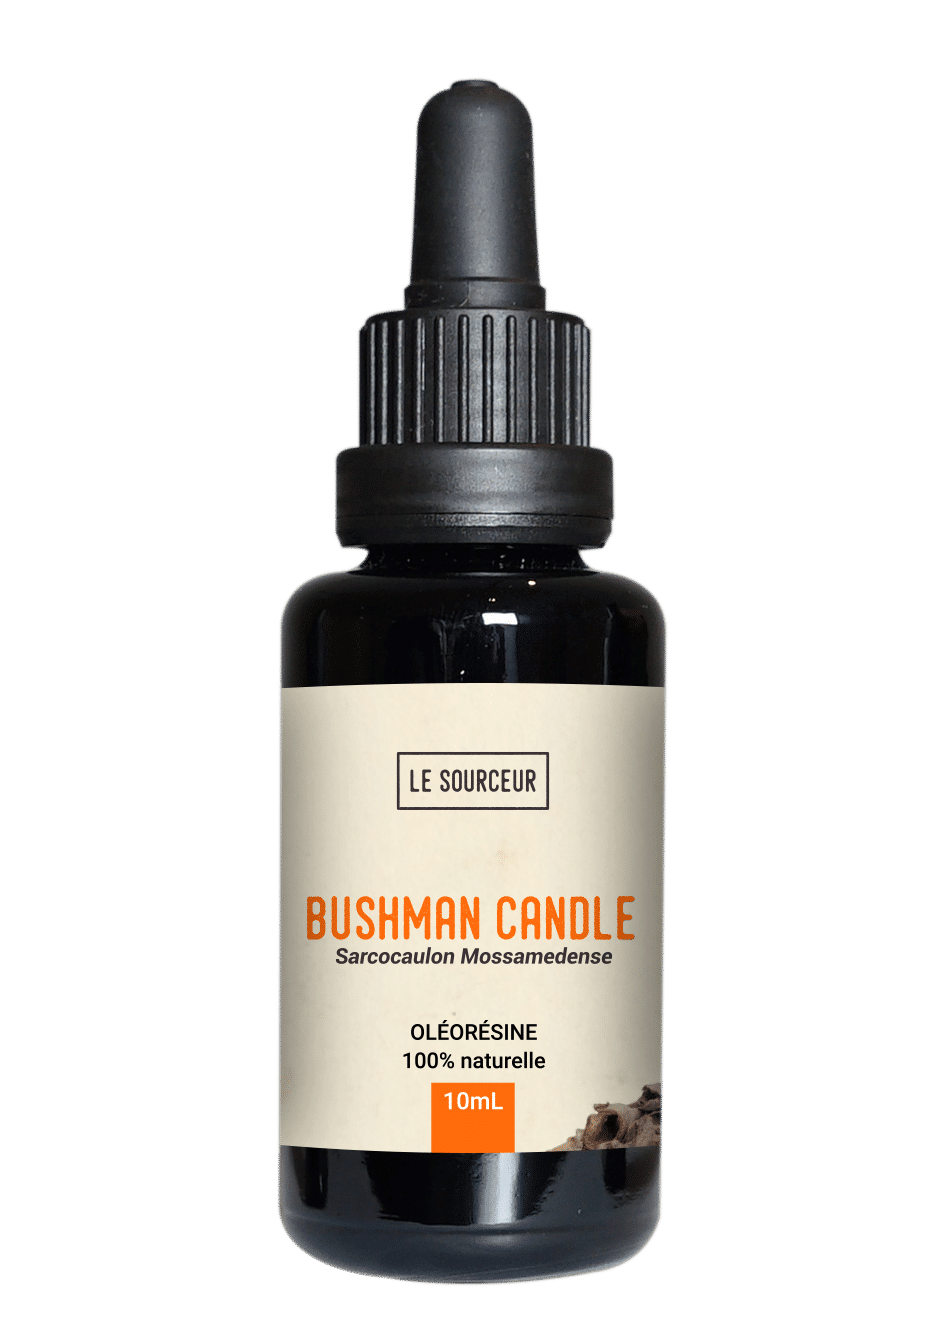 Bushman Candle oleoresin bottle